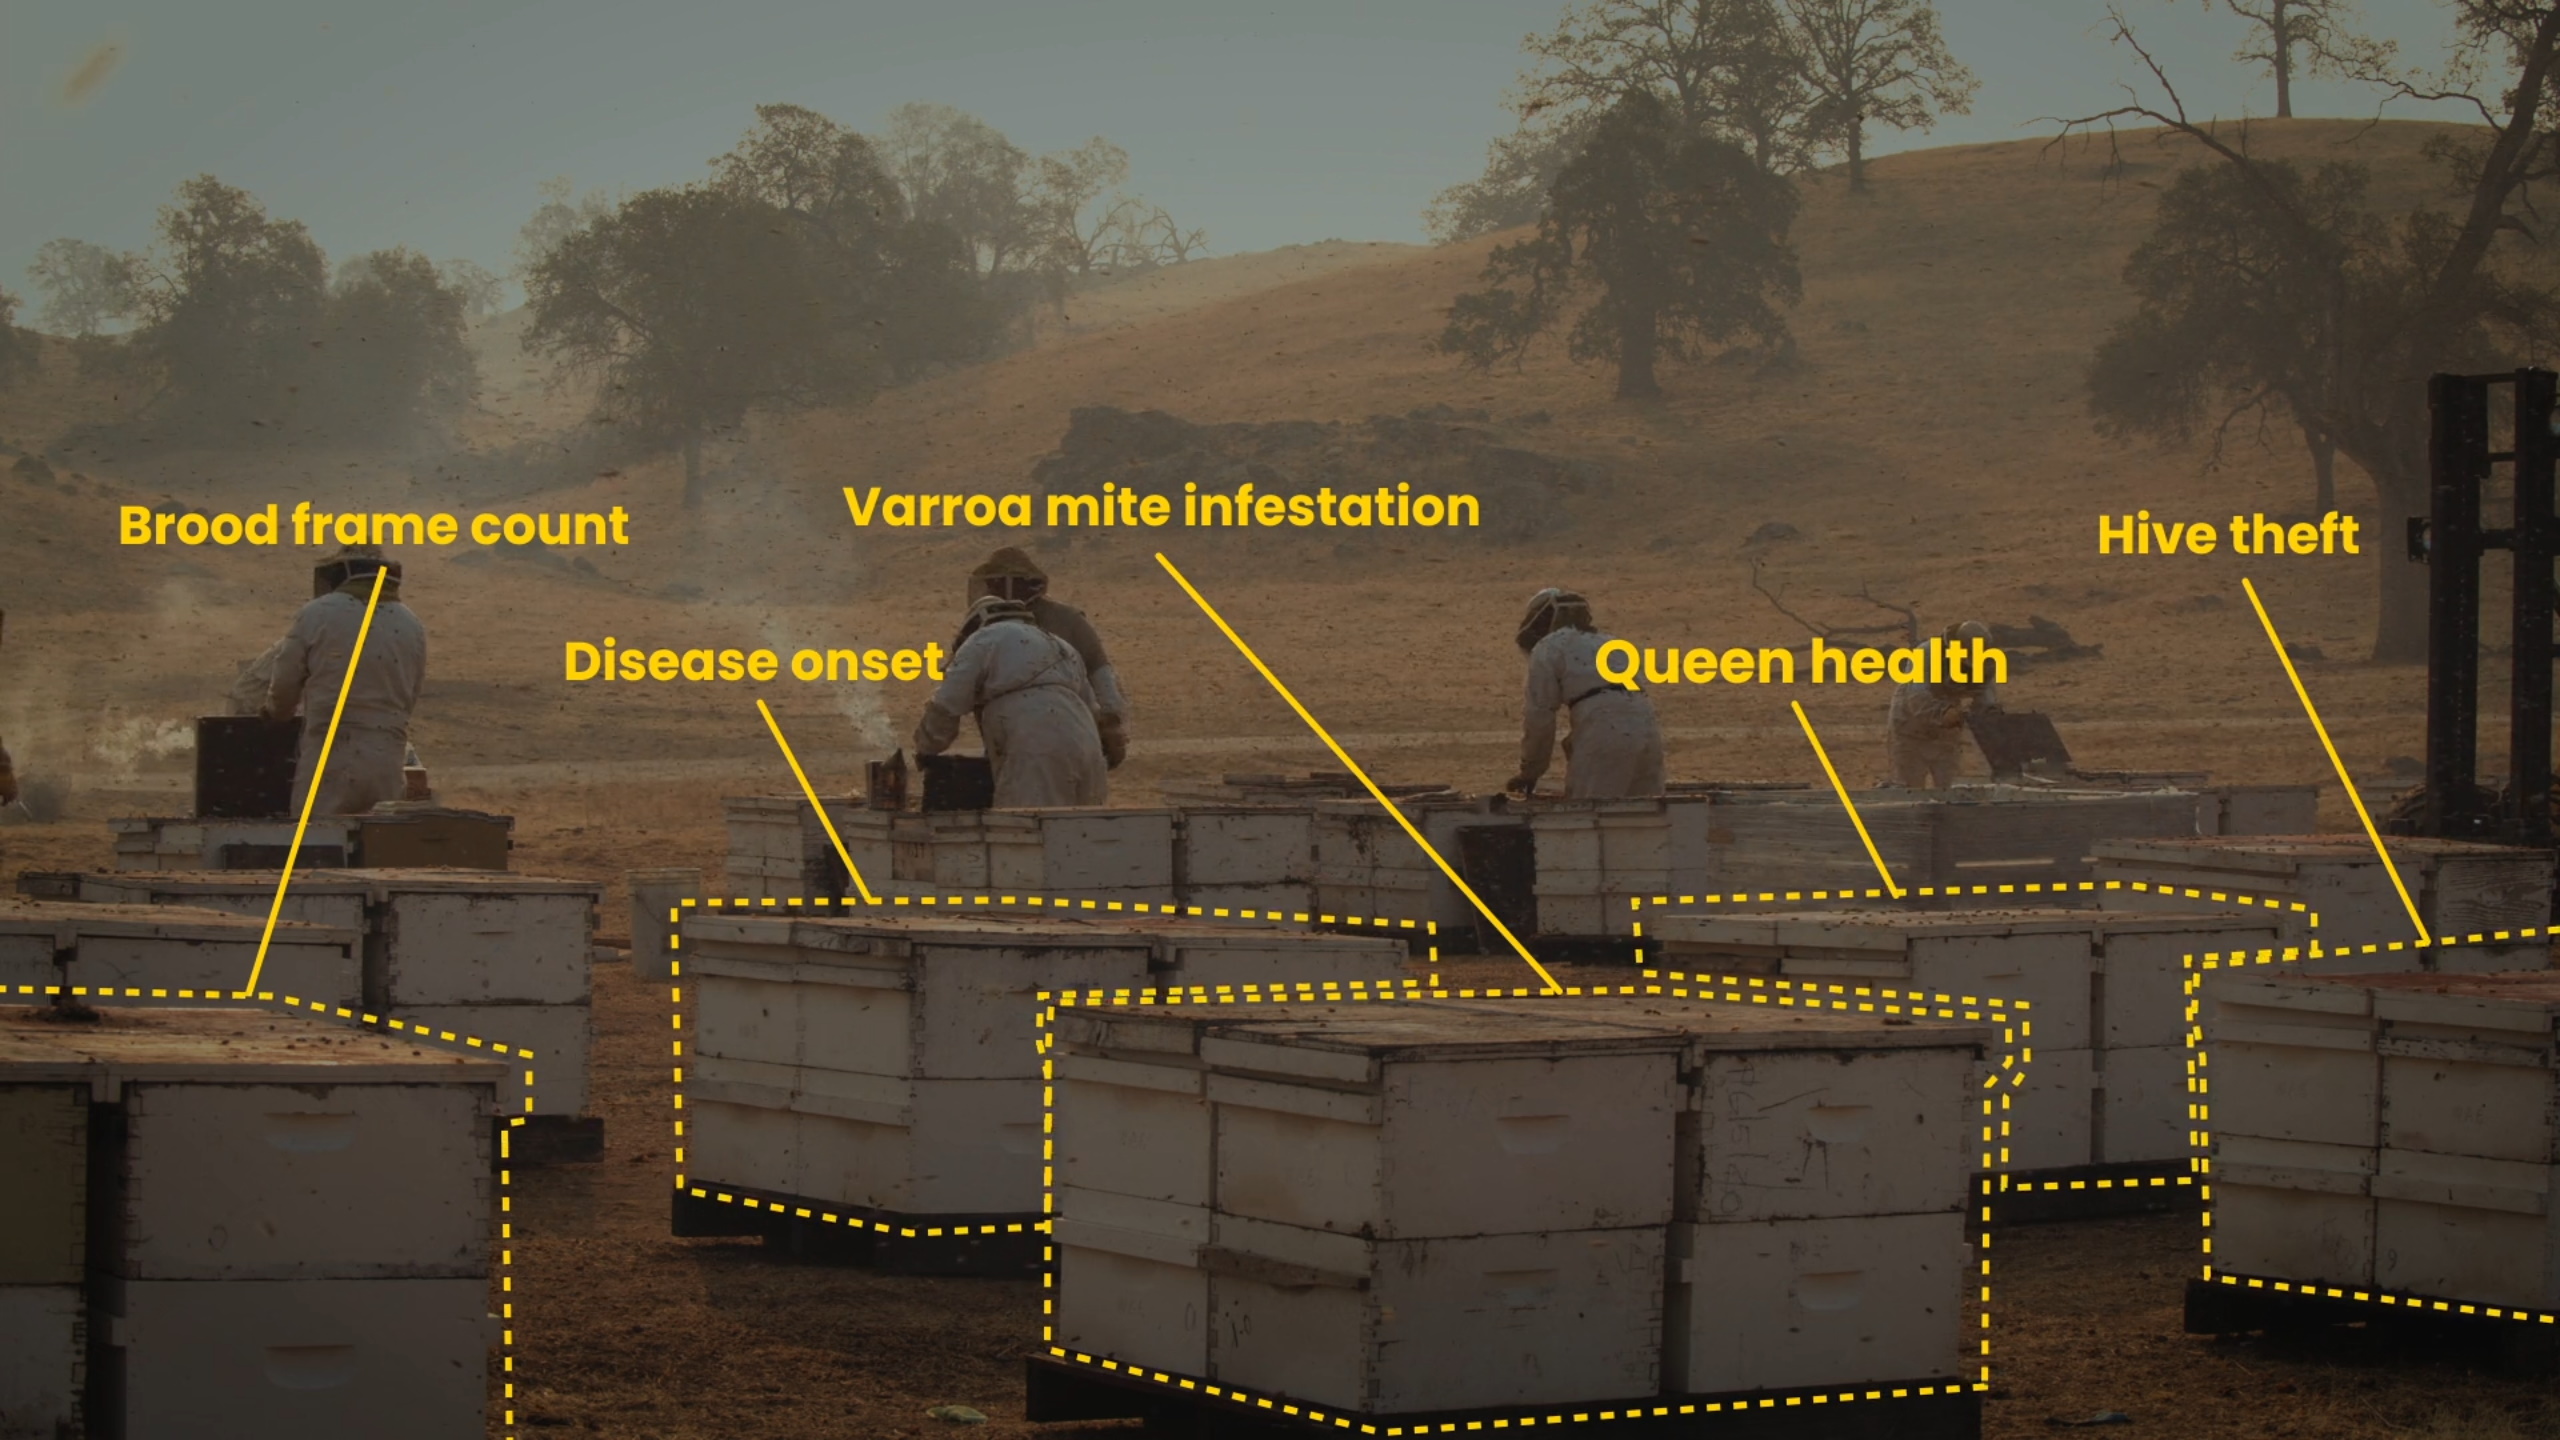 کندوهای زنبور عسل با برچسب هایی که مشکلاتی را که ممکن است با آنها روبرو شود ، مانند کنه ها نشان می دهد.